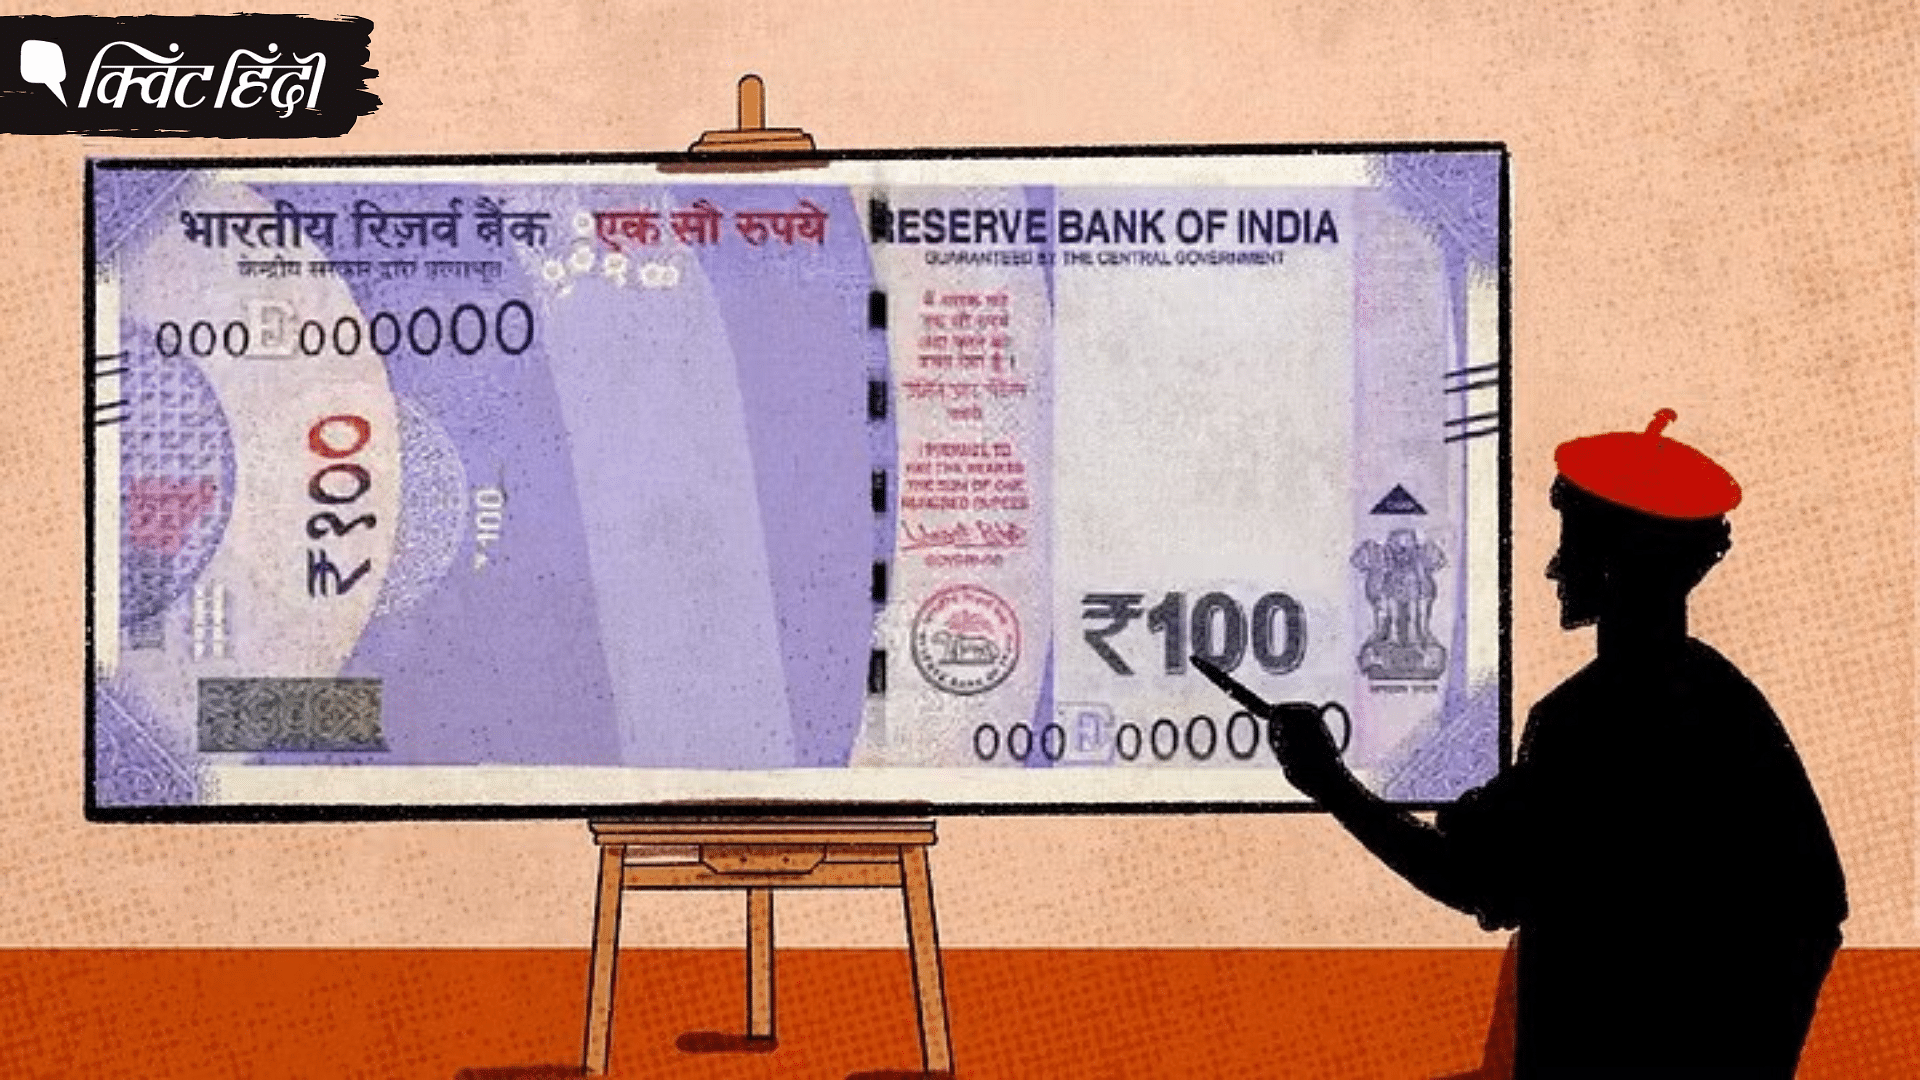 <div class="paragraphs"><p>आजादी से लेकर 2022 तक भारतीय बैंक नोट और मुद्रा का क्रमिक बदलाव कैसे हुआ?</p></div>